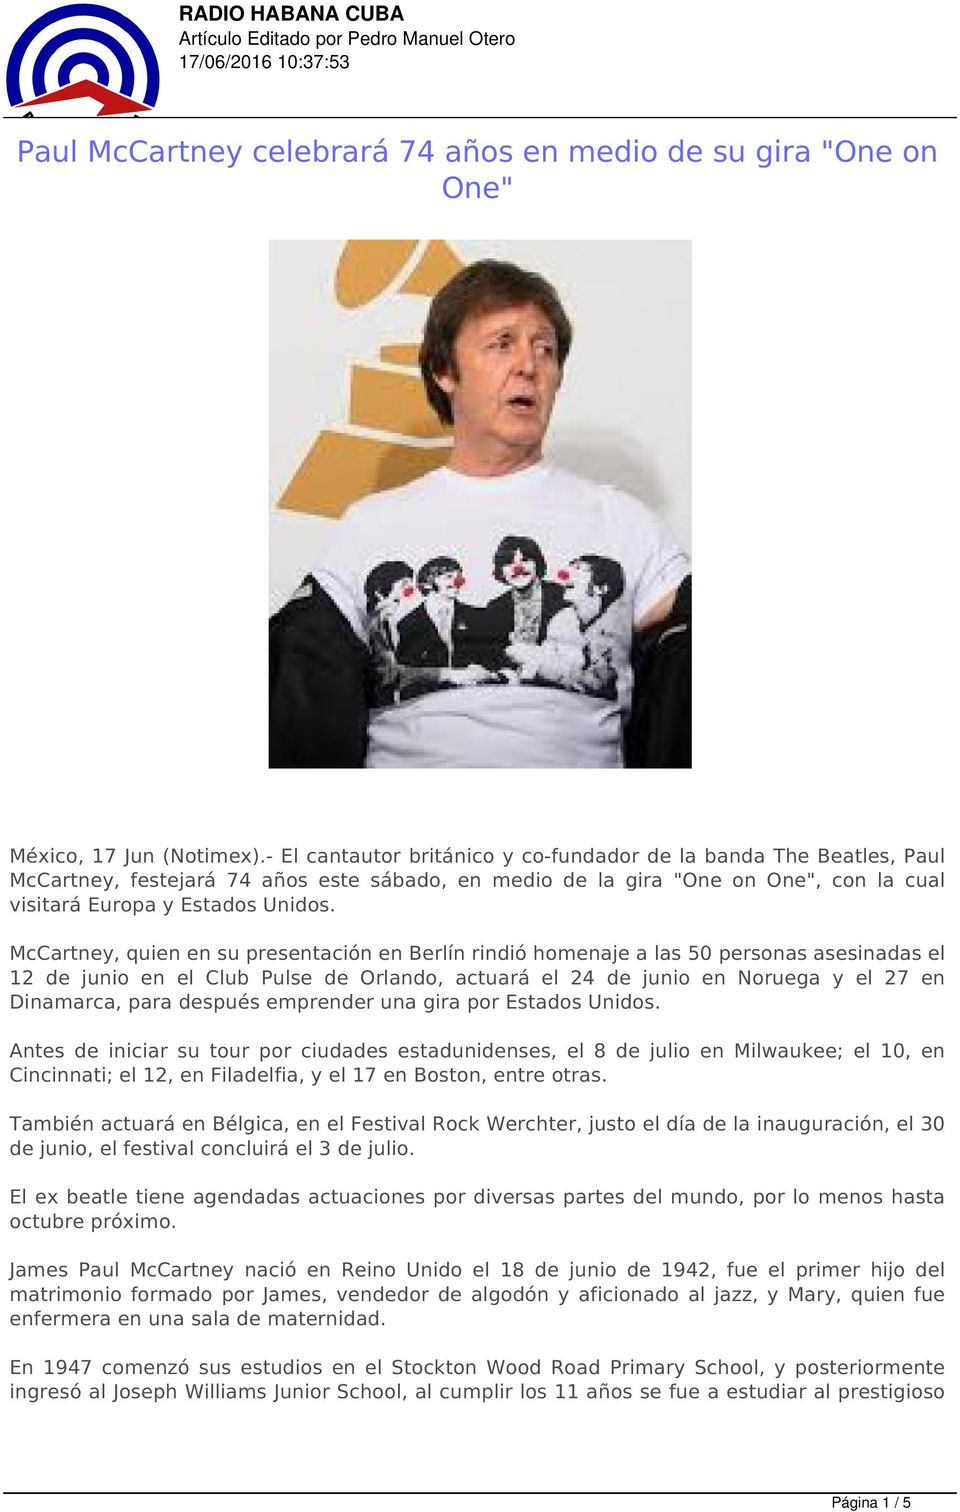 McCartney, quien en su presentación en Berlín rindió homenaje a las 50 personas asesinadas el 12 de junio en el Club Pulse de Orlando, actuará el 24 de junio en Noruega y el 27 en Dinamarca, para